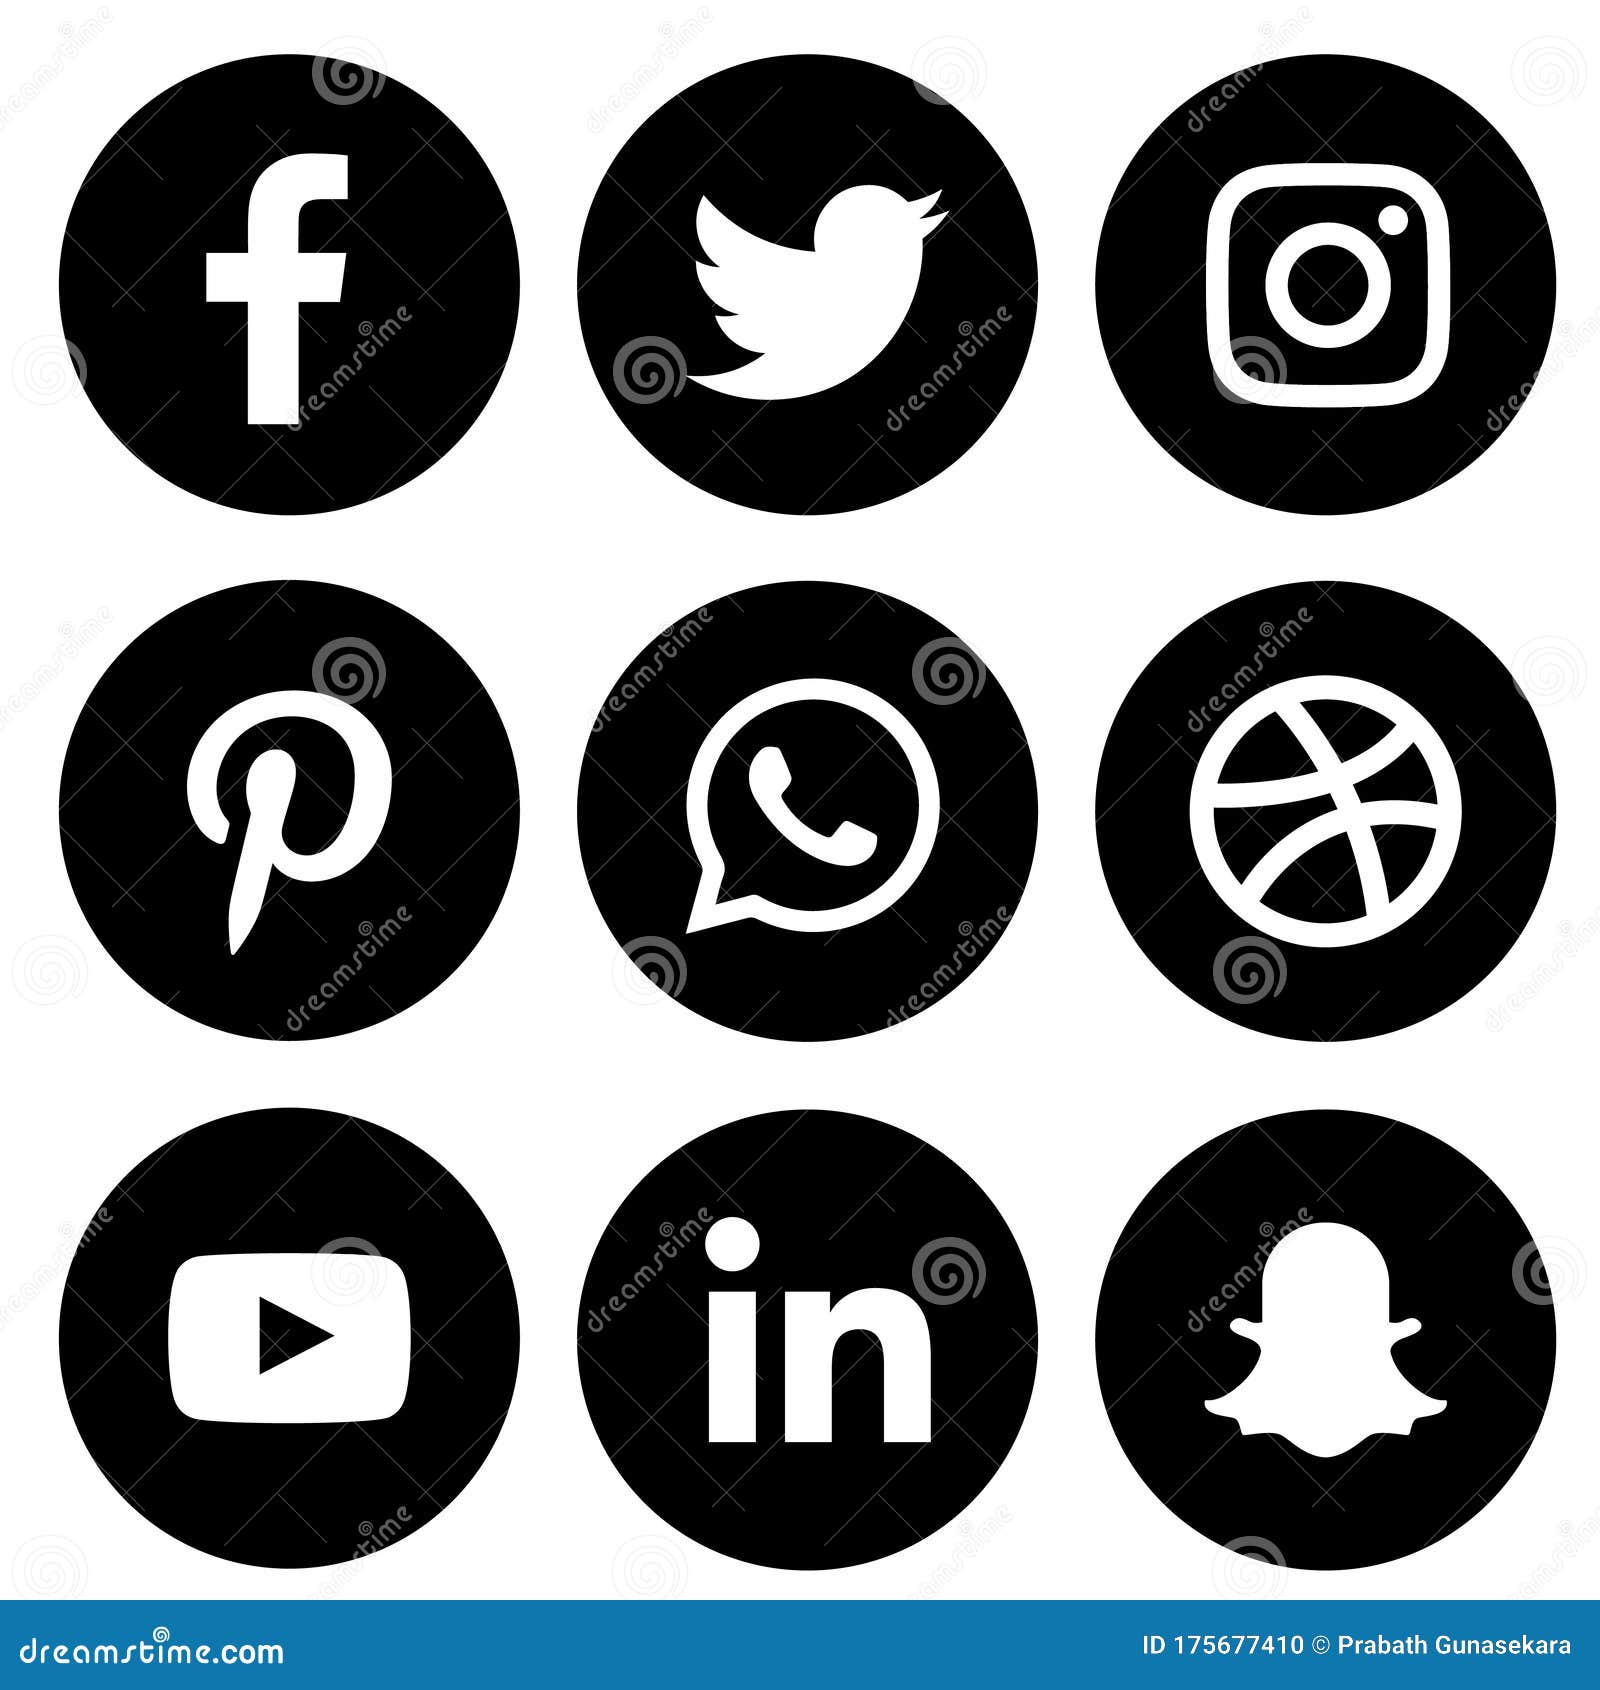 Những biểu tượng mạng xã hội rất quen thuộc với chúng ta bao gồm Facebook, Instagram, Twitter, Pinterest và đương nhiên còn có cả Youtube. Hãy bấm vào hình ảnh để xem các biểu tượng mạng xã hội và kết nối với thế giới.